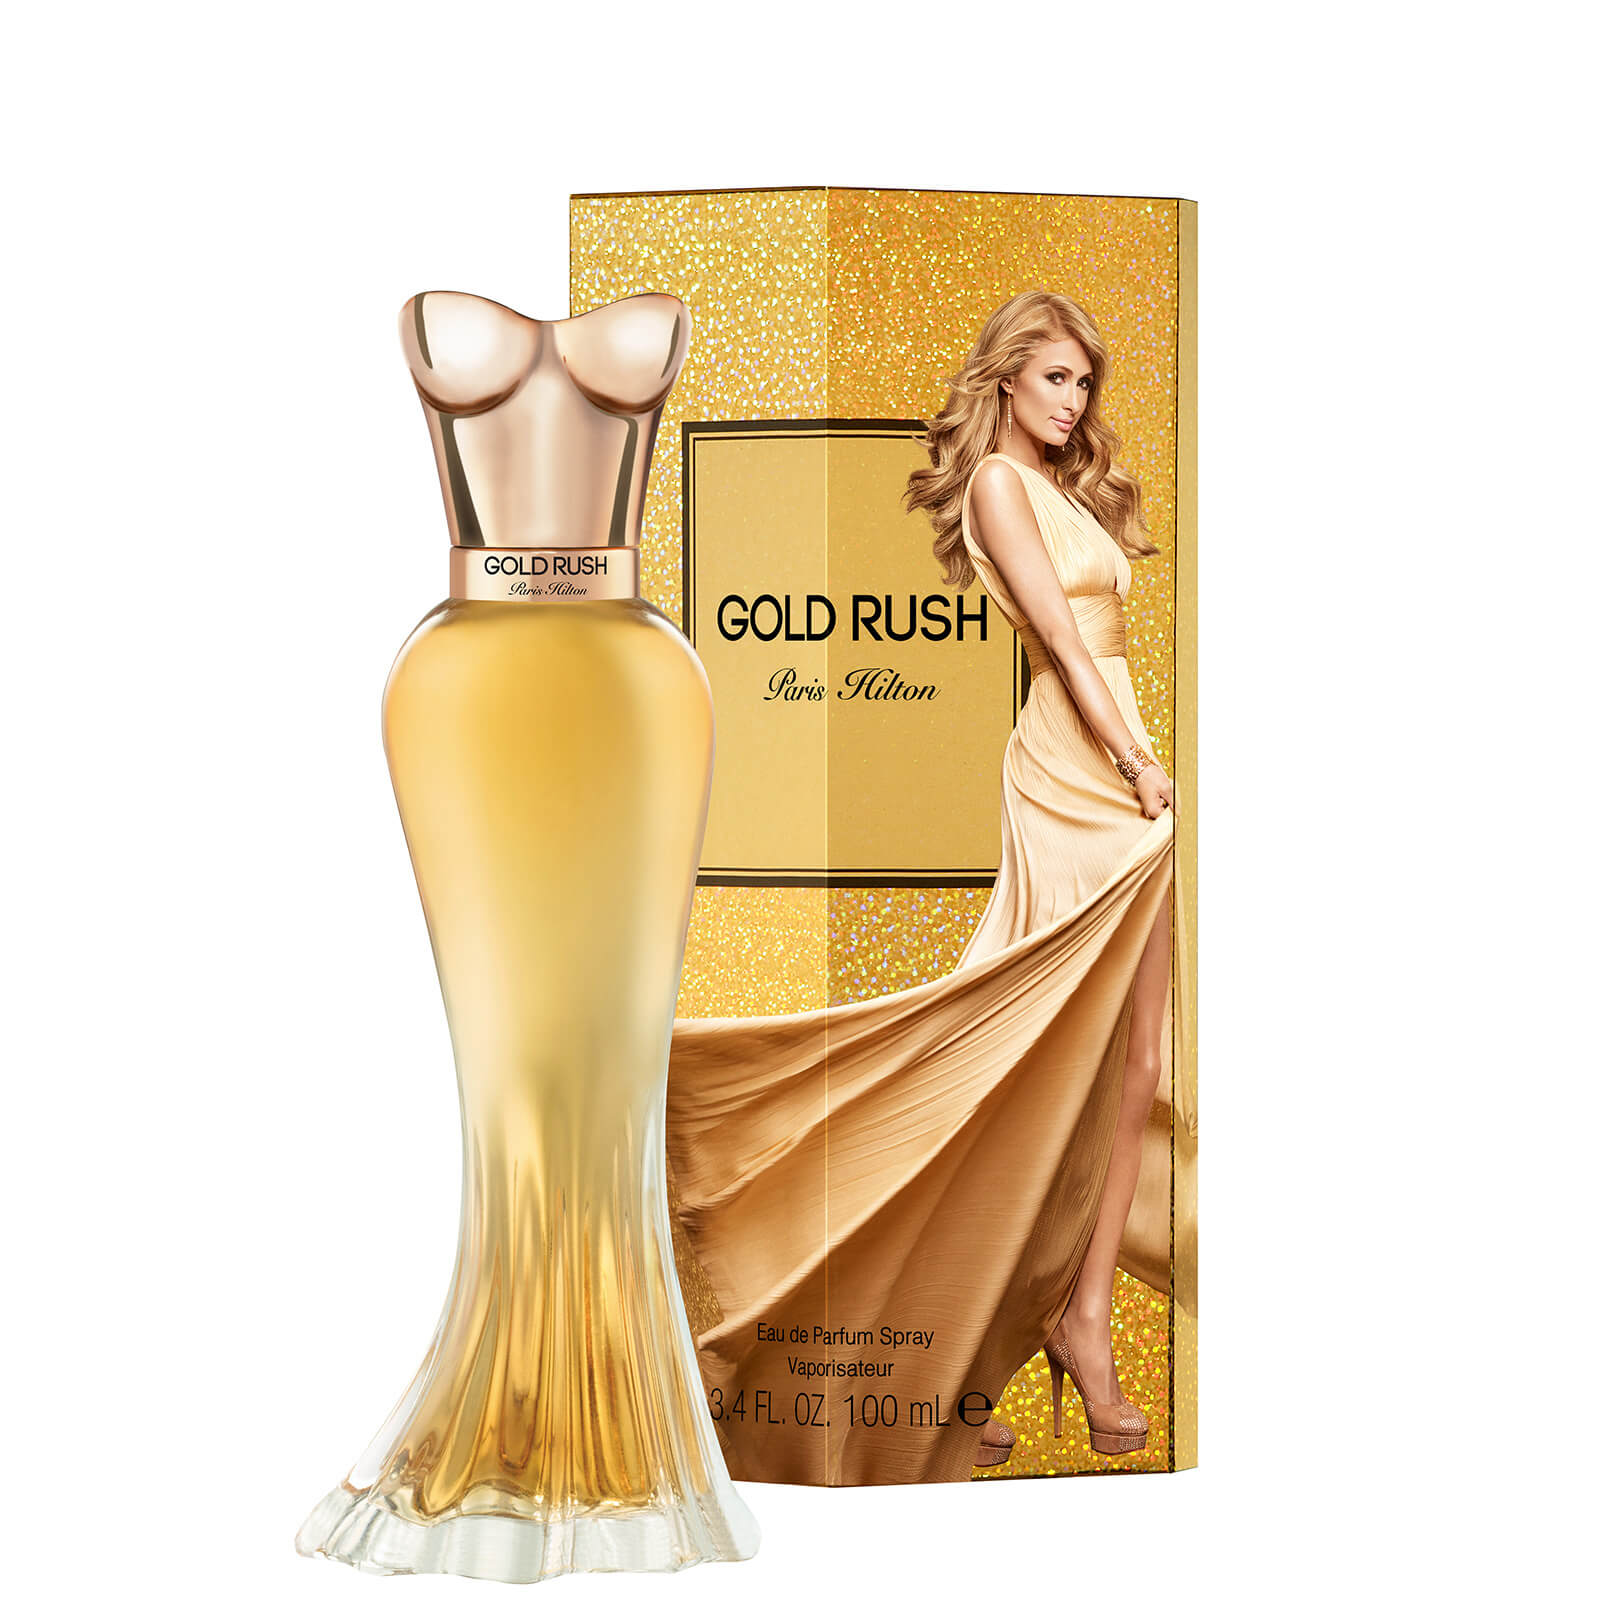 Paris Hilton Gold Rush Eau De Parfum 3.4 Fl. oz